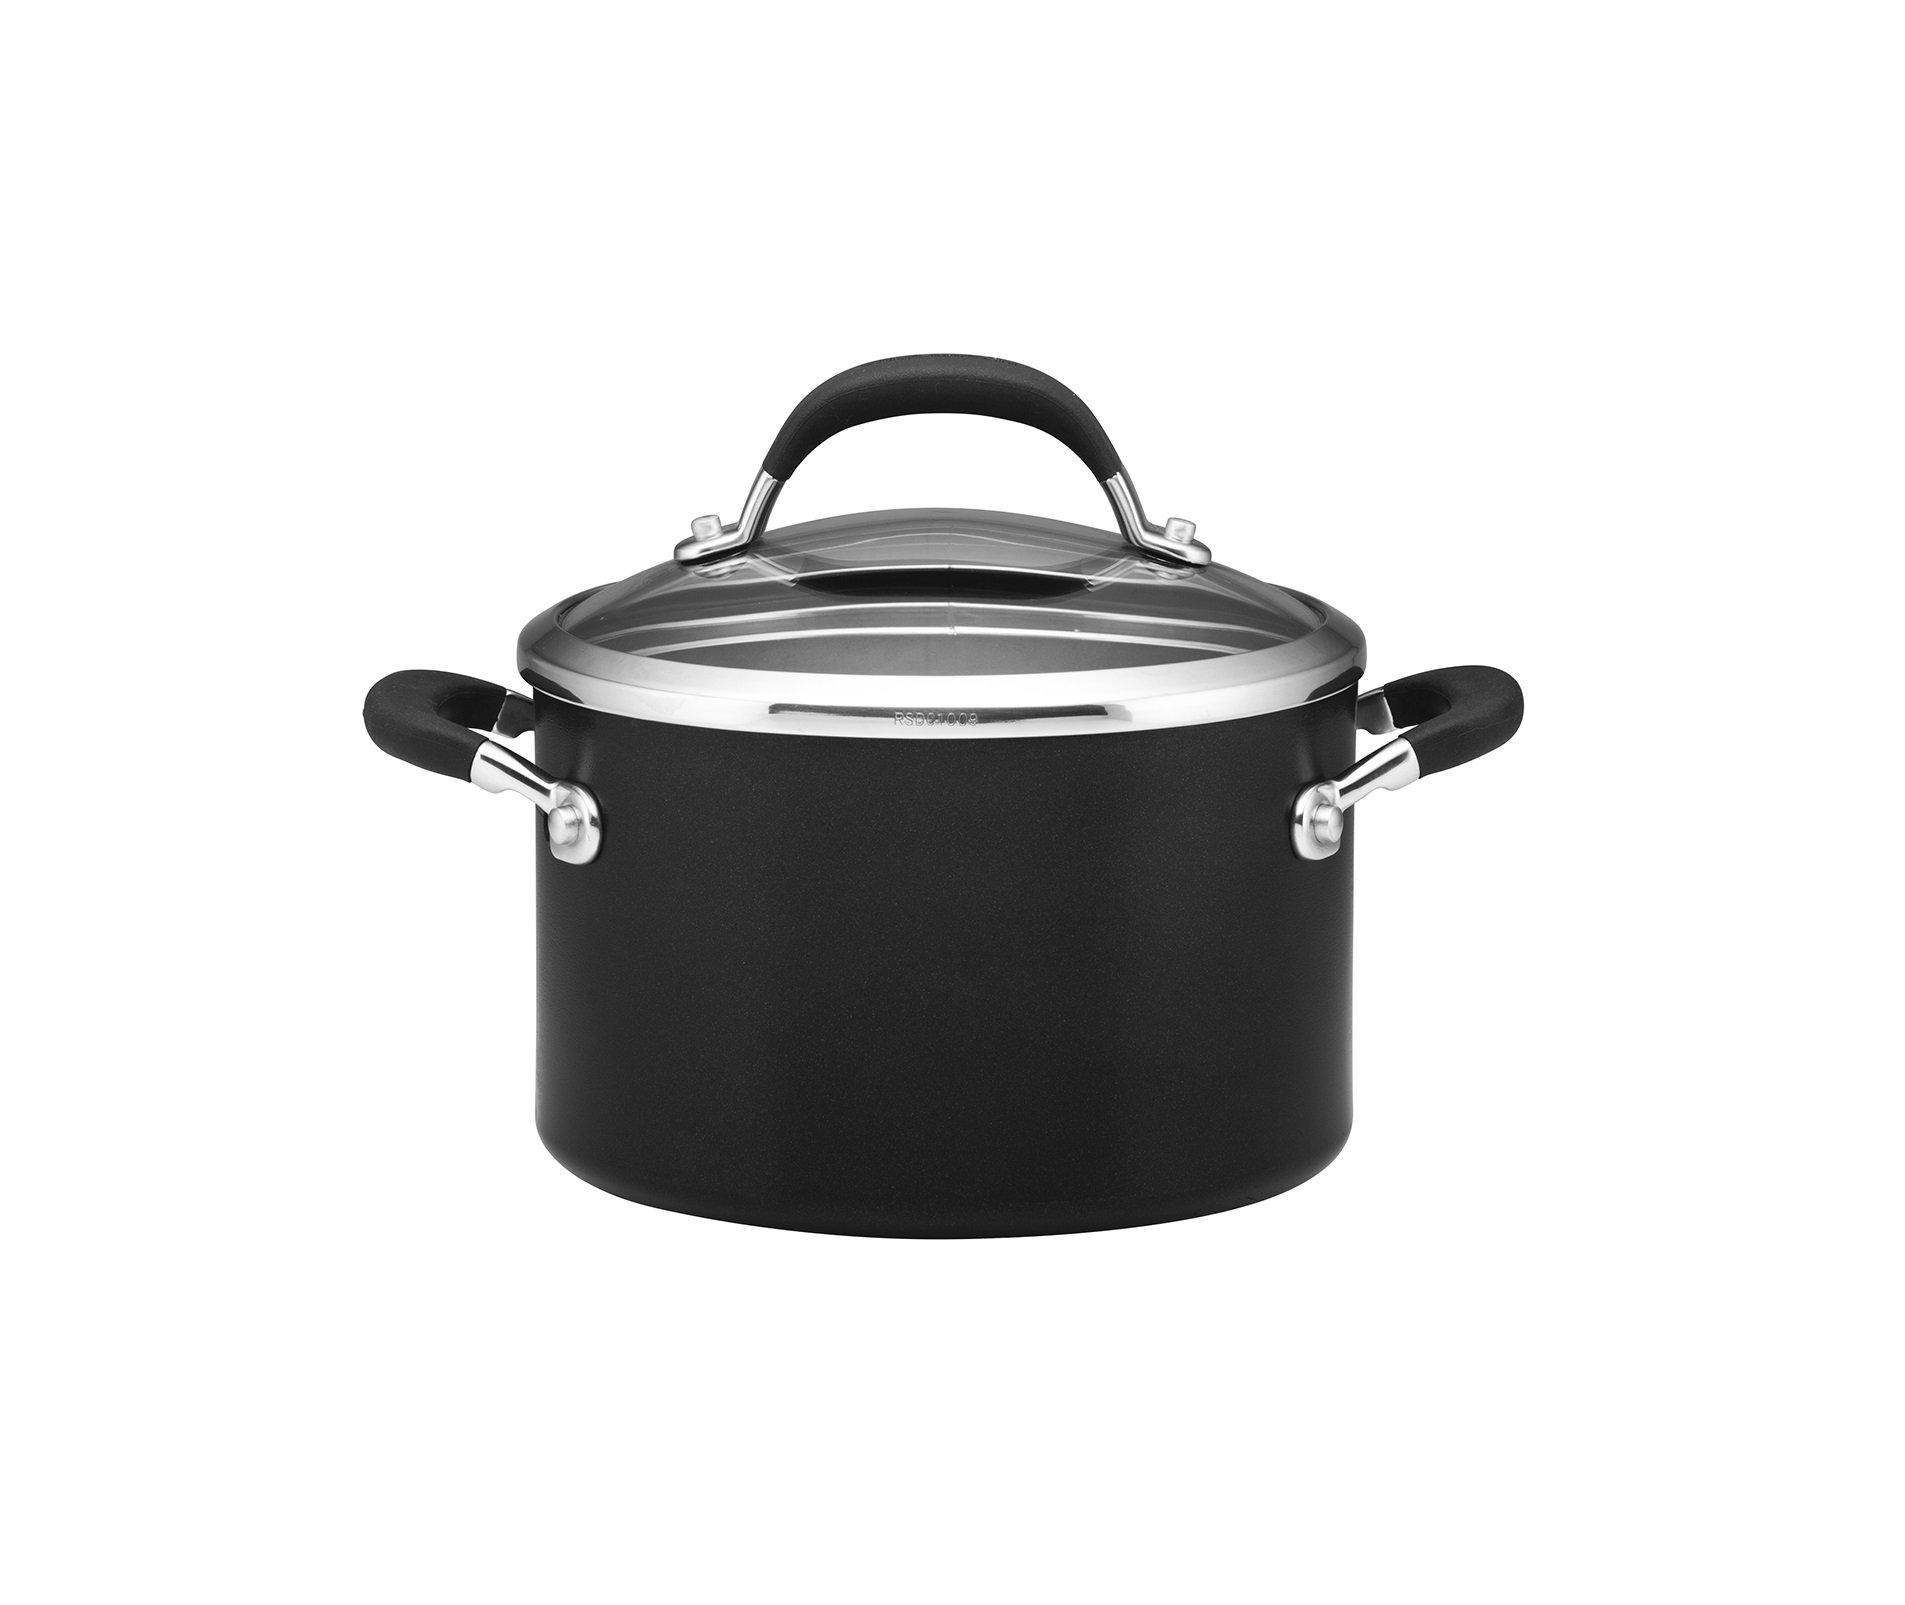 Black 'Premier Professional' Round Non Stick Cookware Stockpot - 20cm